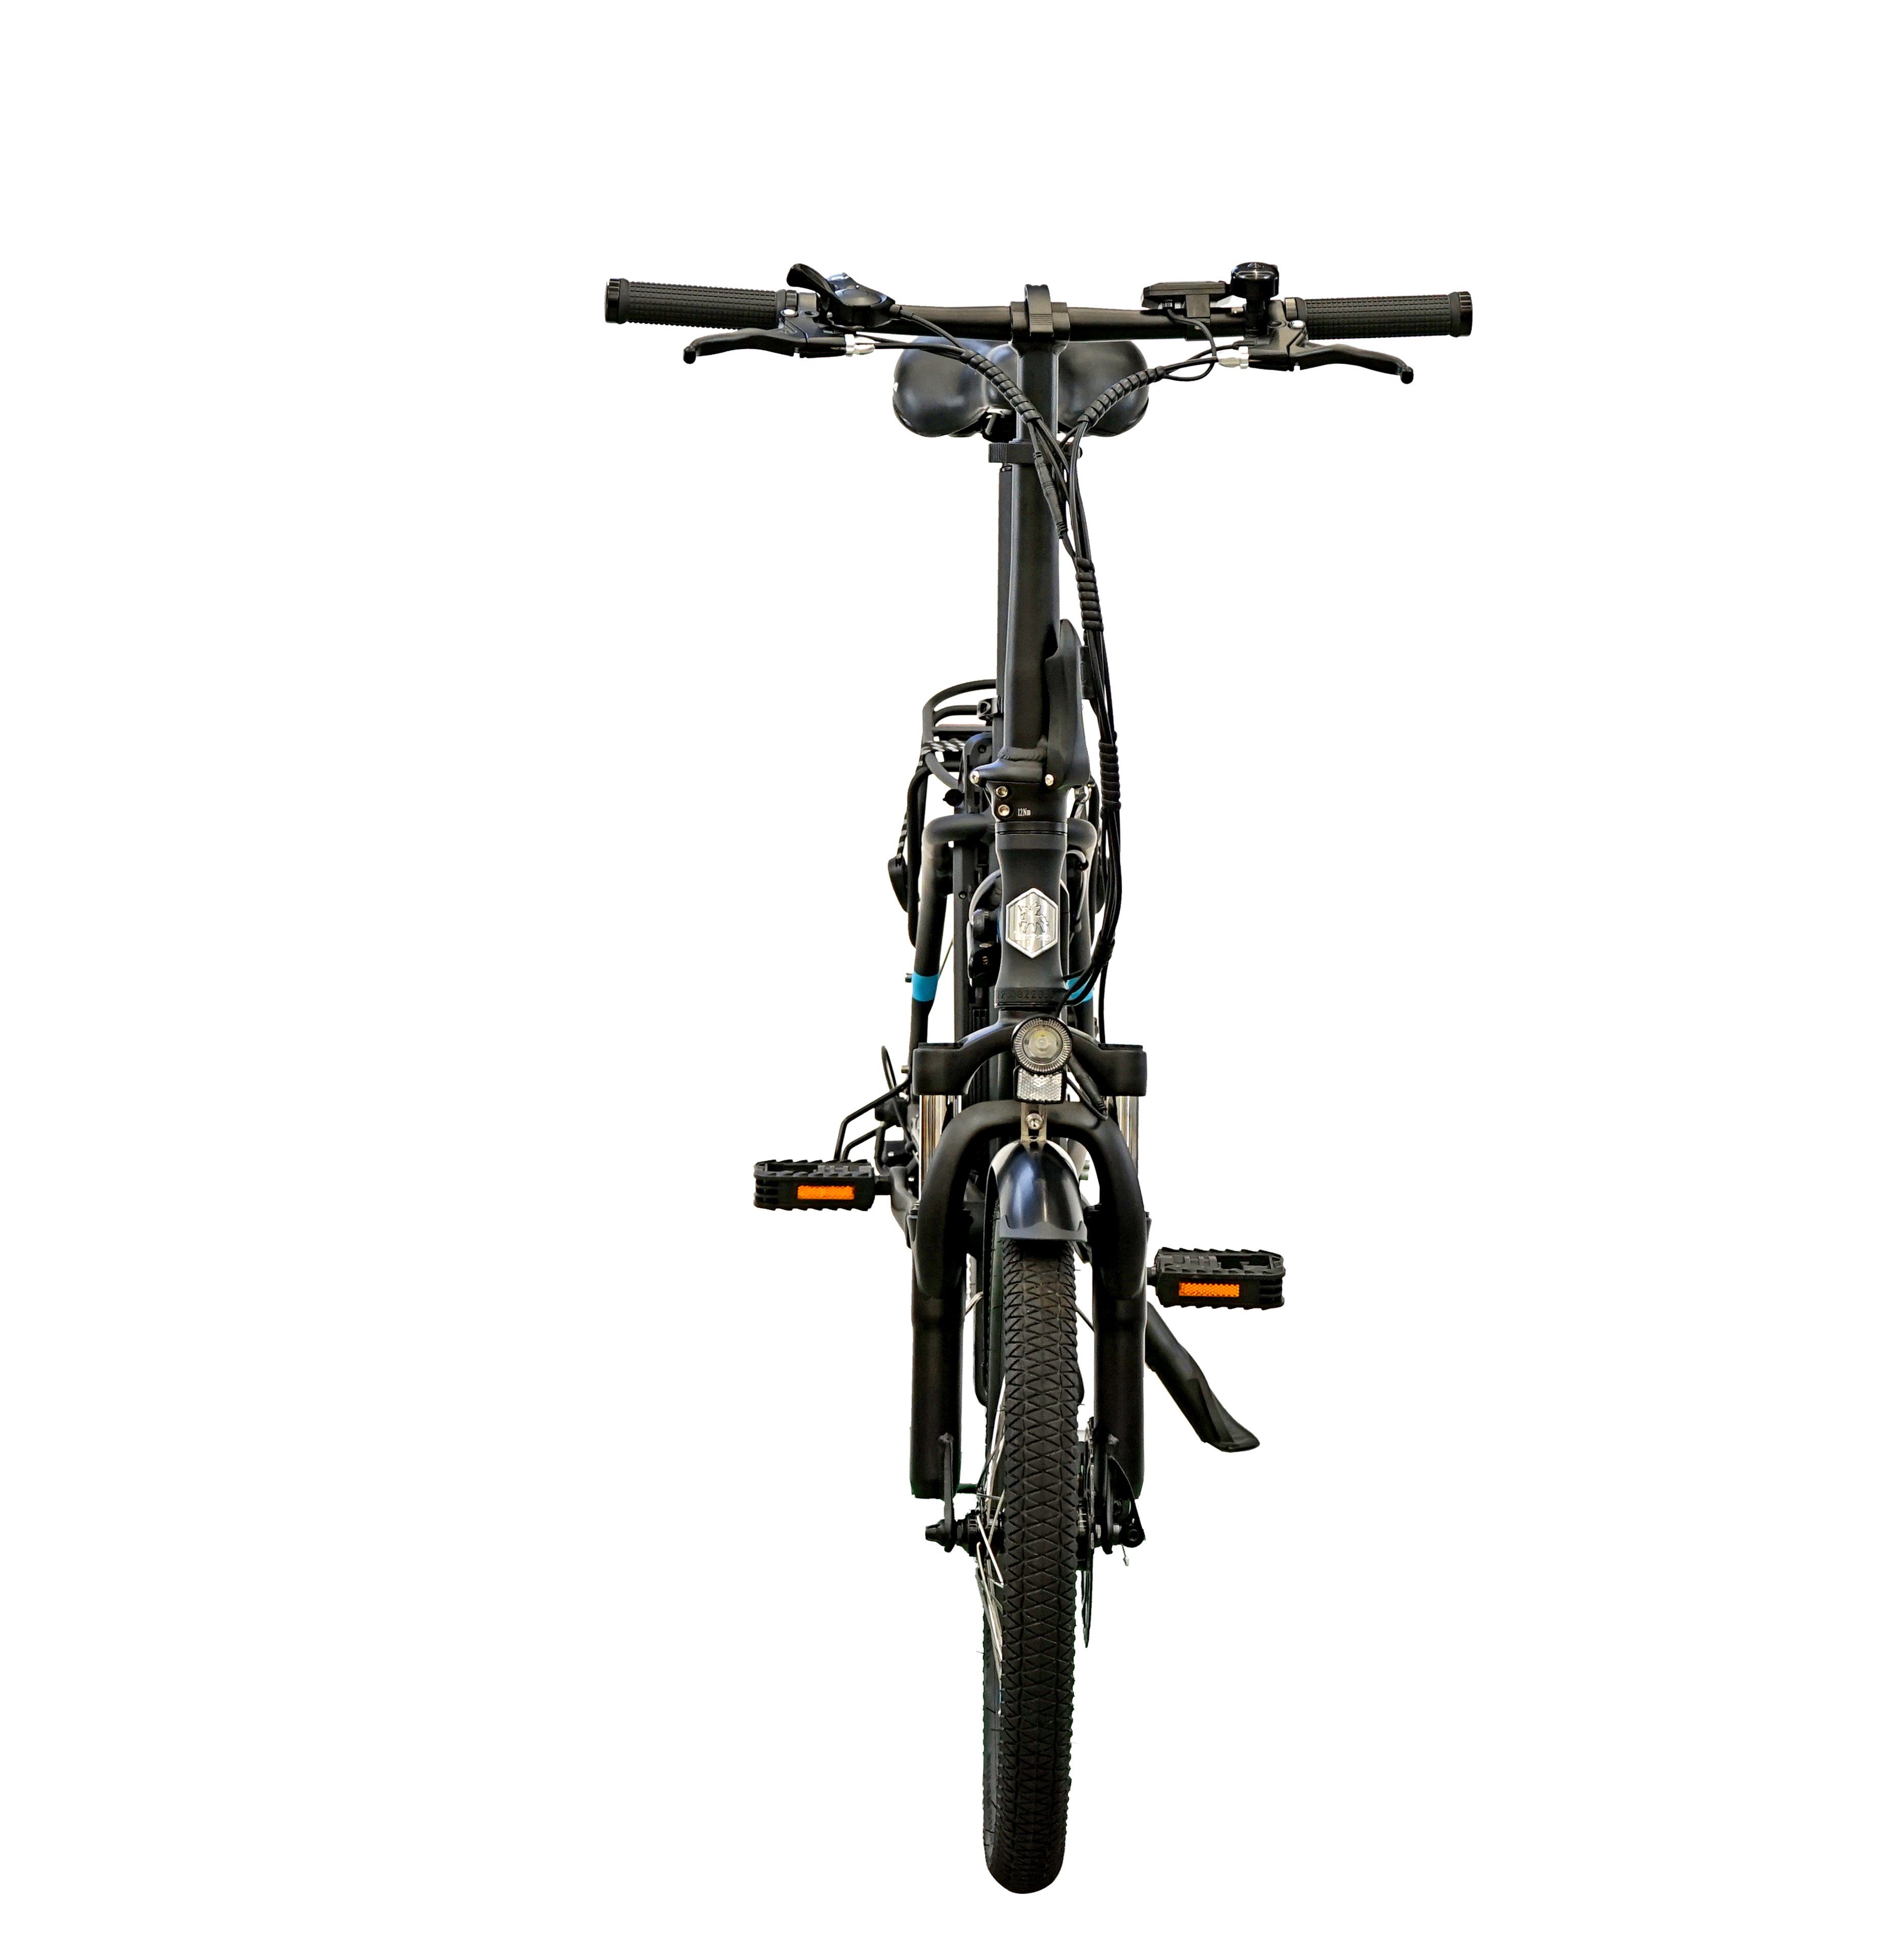 Fangqi E-Bike Mountainbike,Citybike,Smart 360 Gepäckträger, LCD-Display, Nabendynamo, Heckmotor, (kraftunterstützt/Pedal),25km/h, Bike,Höchstgeschwindigkeit Max.25km/h,IP54, Reichweite,120kg, Fahrmodi Elektrofahrrad,SHIMANO,250W/36V/10Ah,25km/h, (2 55–65 3 weiß km Gehunterstützungsmodus, Fahrradständer E-BIKE,Zusammenklappbares Wh 6km/h PAS 25km/h), mit Electric und